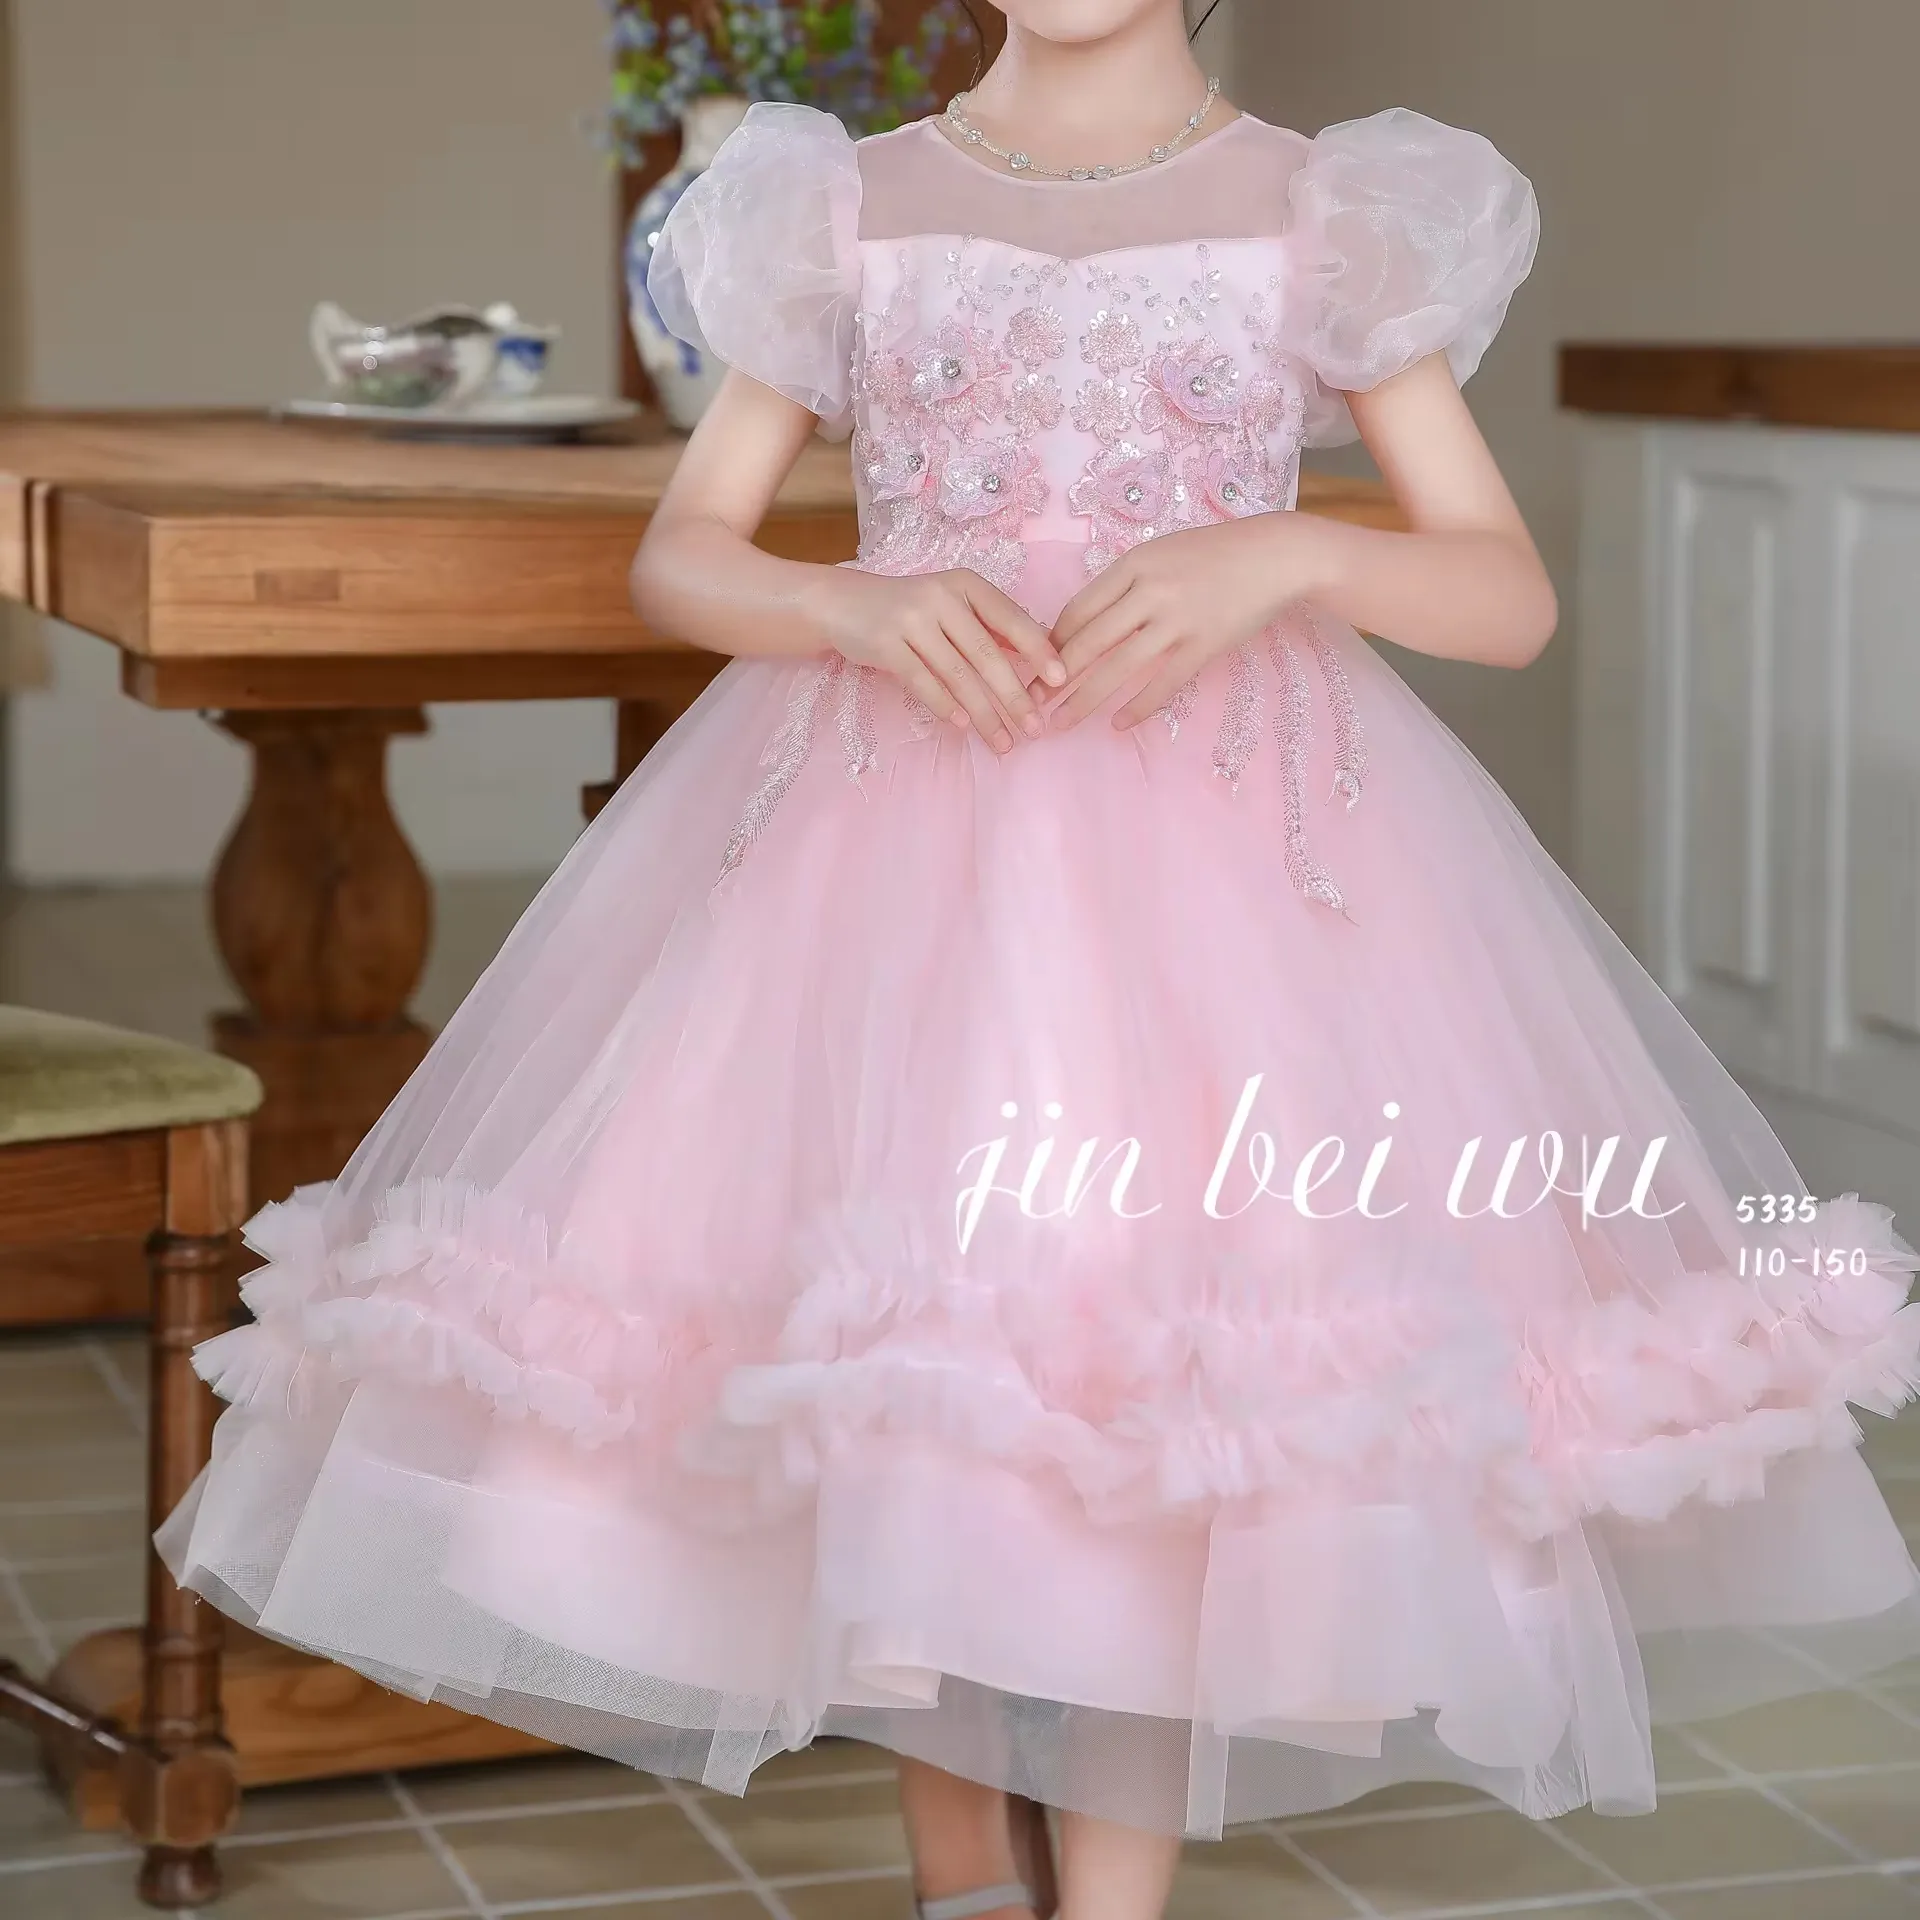 5335 новое красивое детское платье для выступлений, платье для девочек, платье принцессы хорошего качества